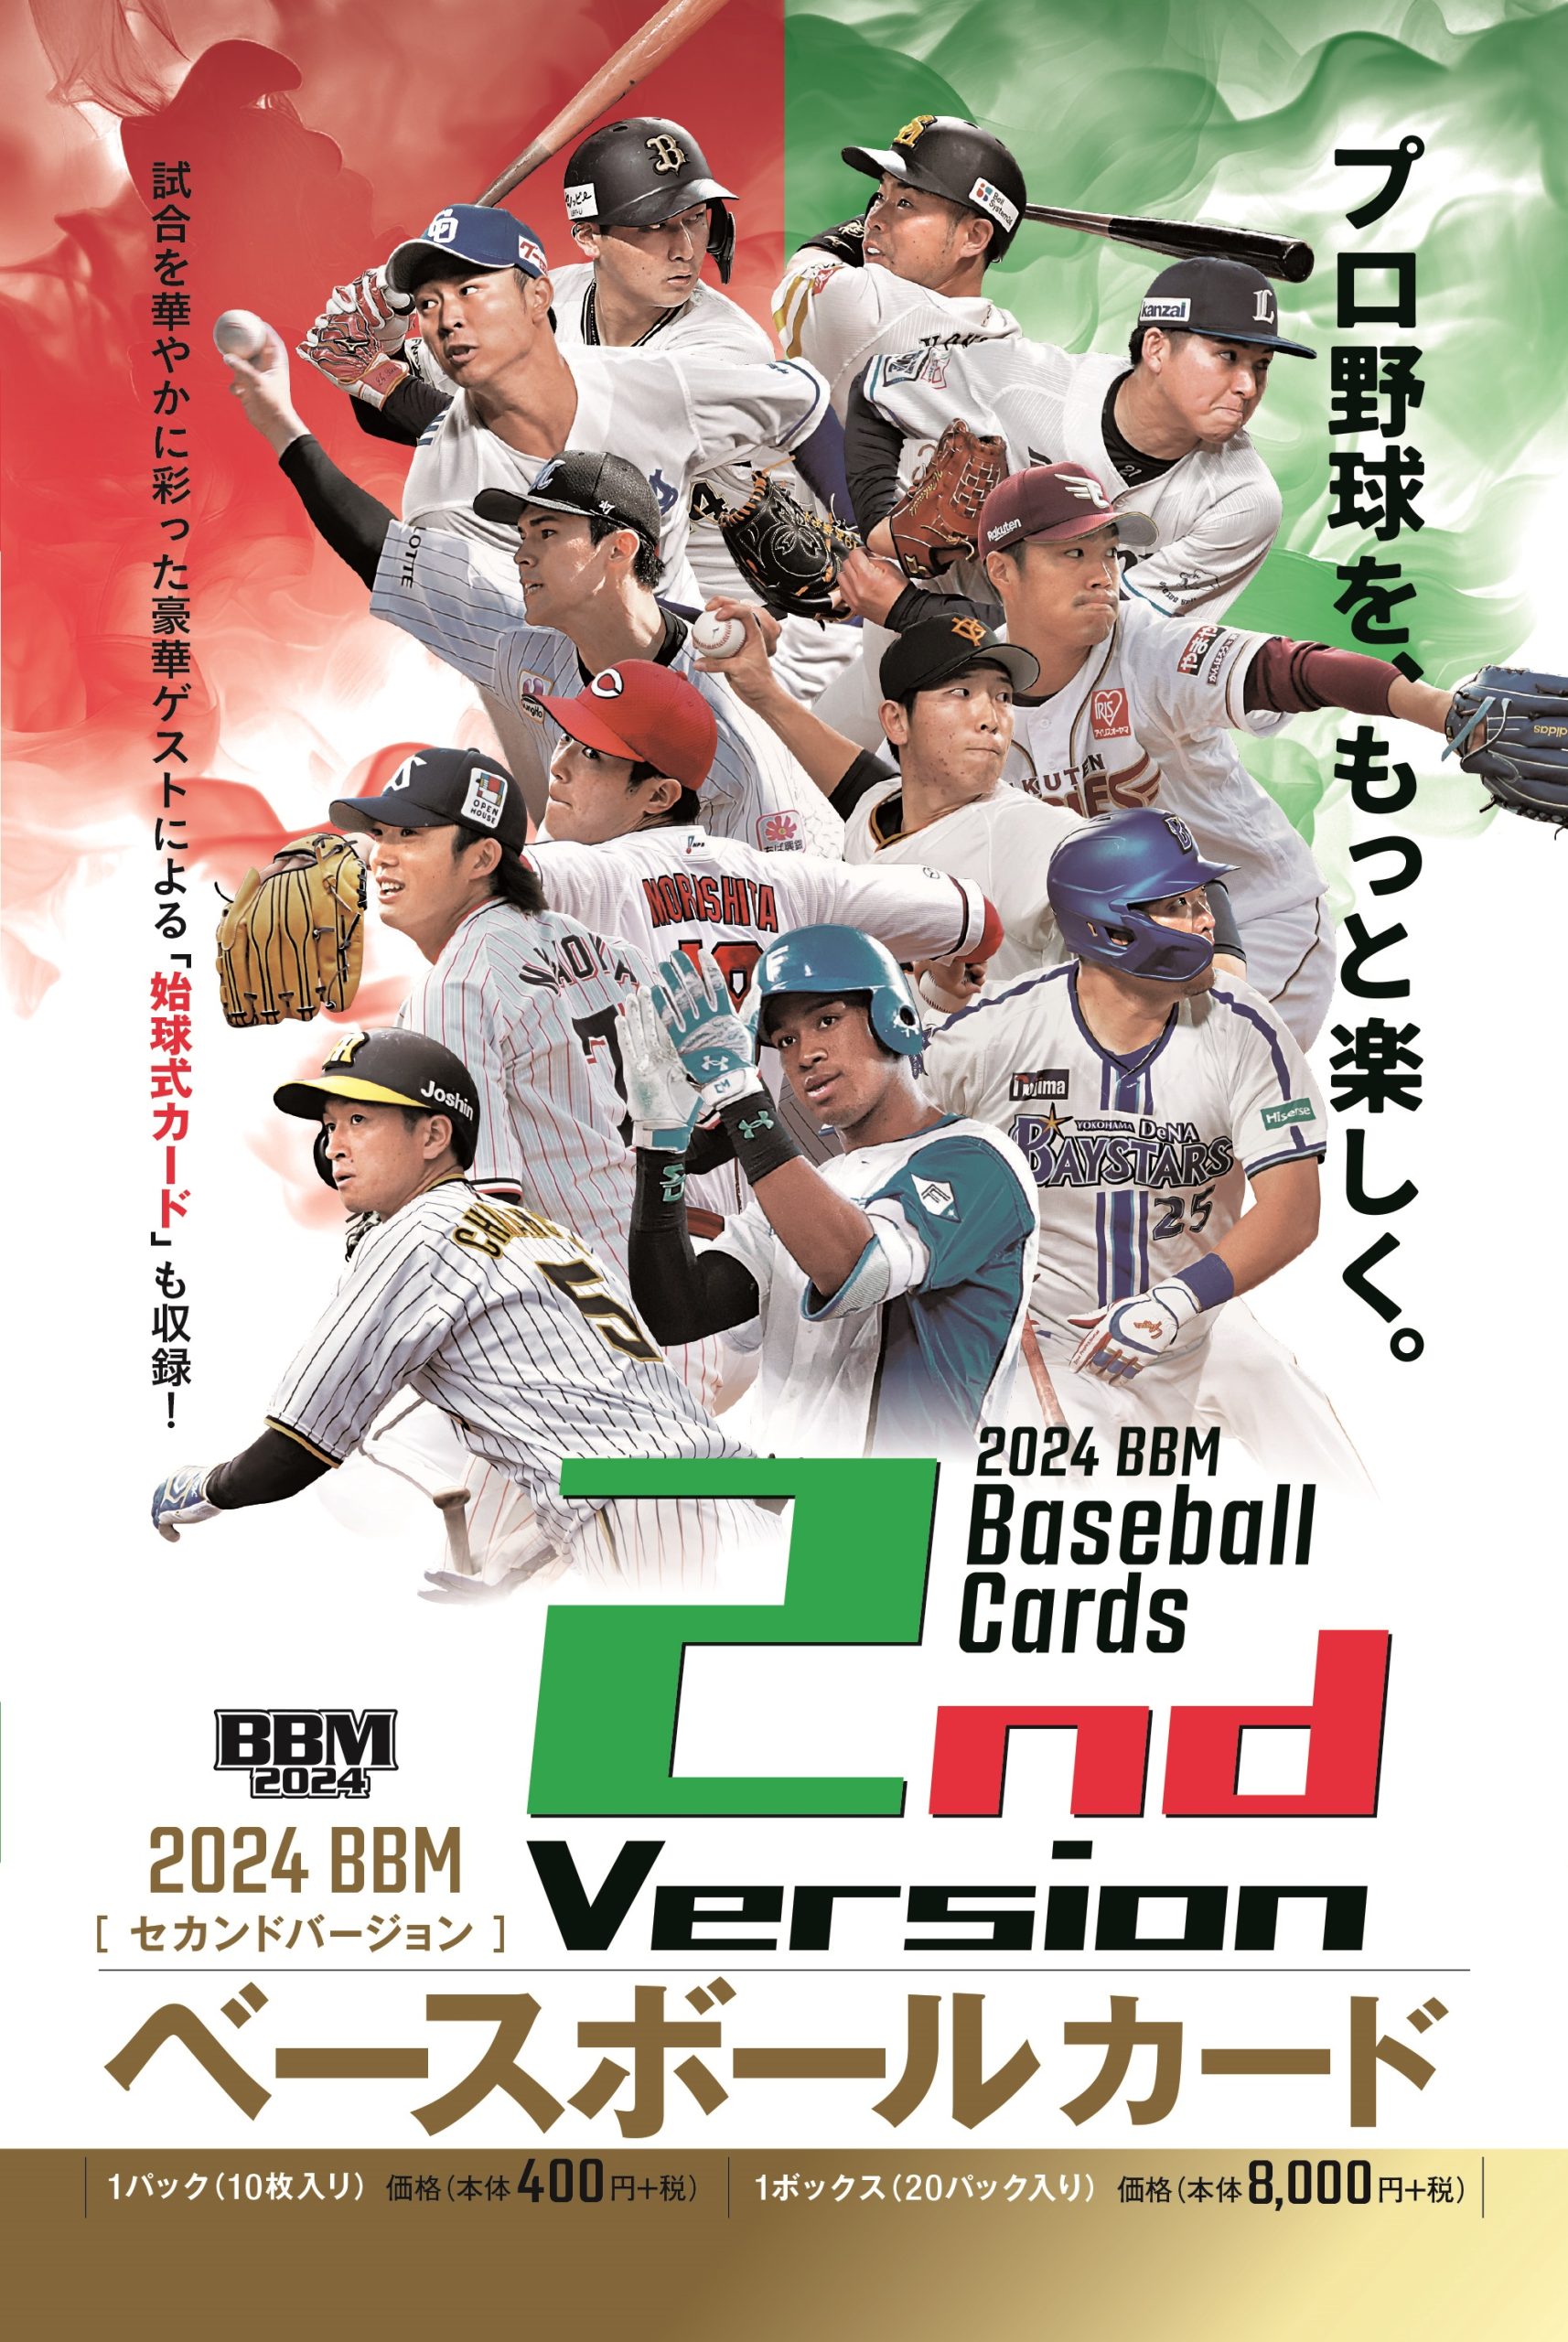 ⚾ 2024 BBM ベースボールカード 2nd バージョン【製品情報】 | Trading Card Journal - スポーツ